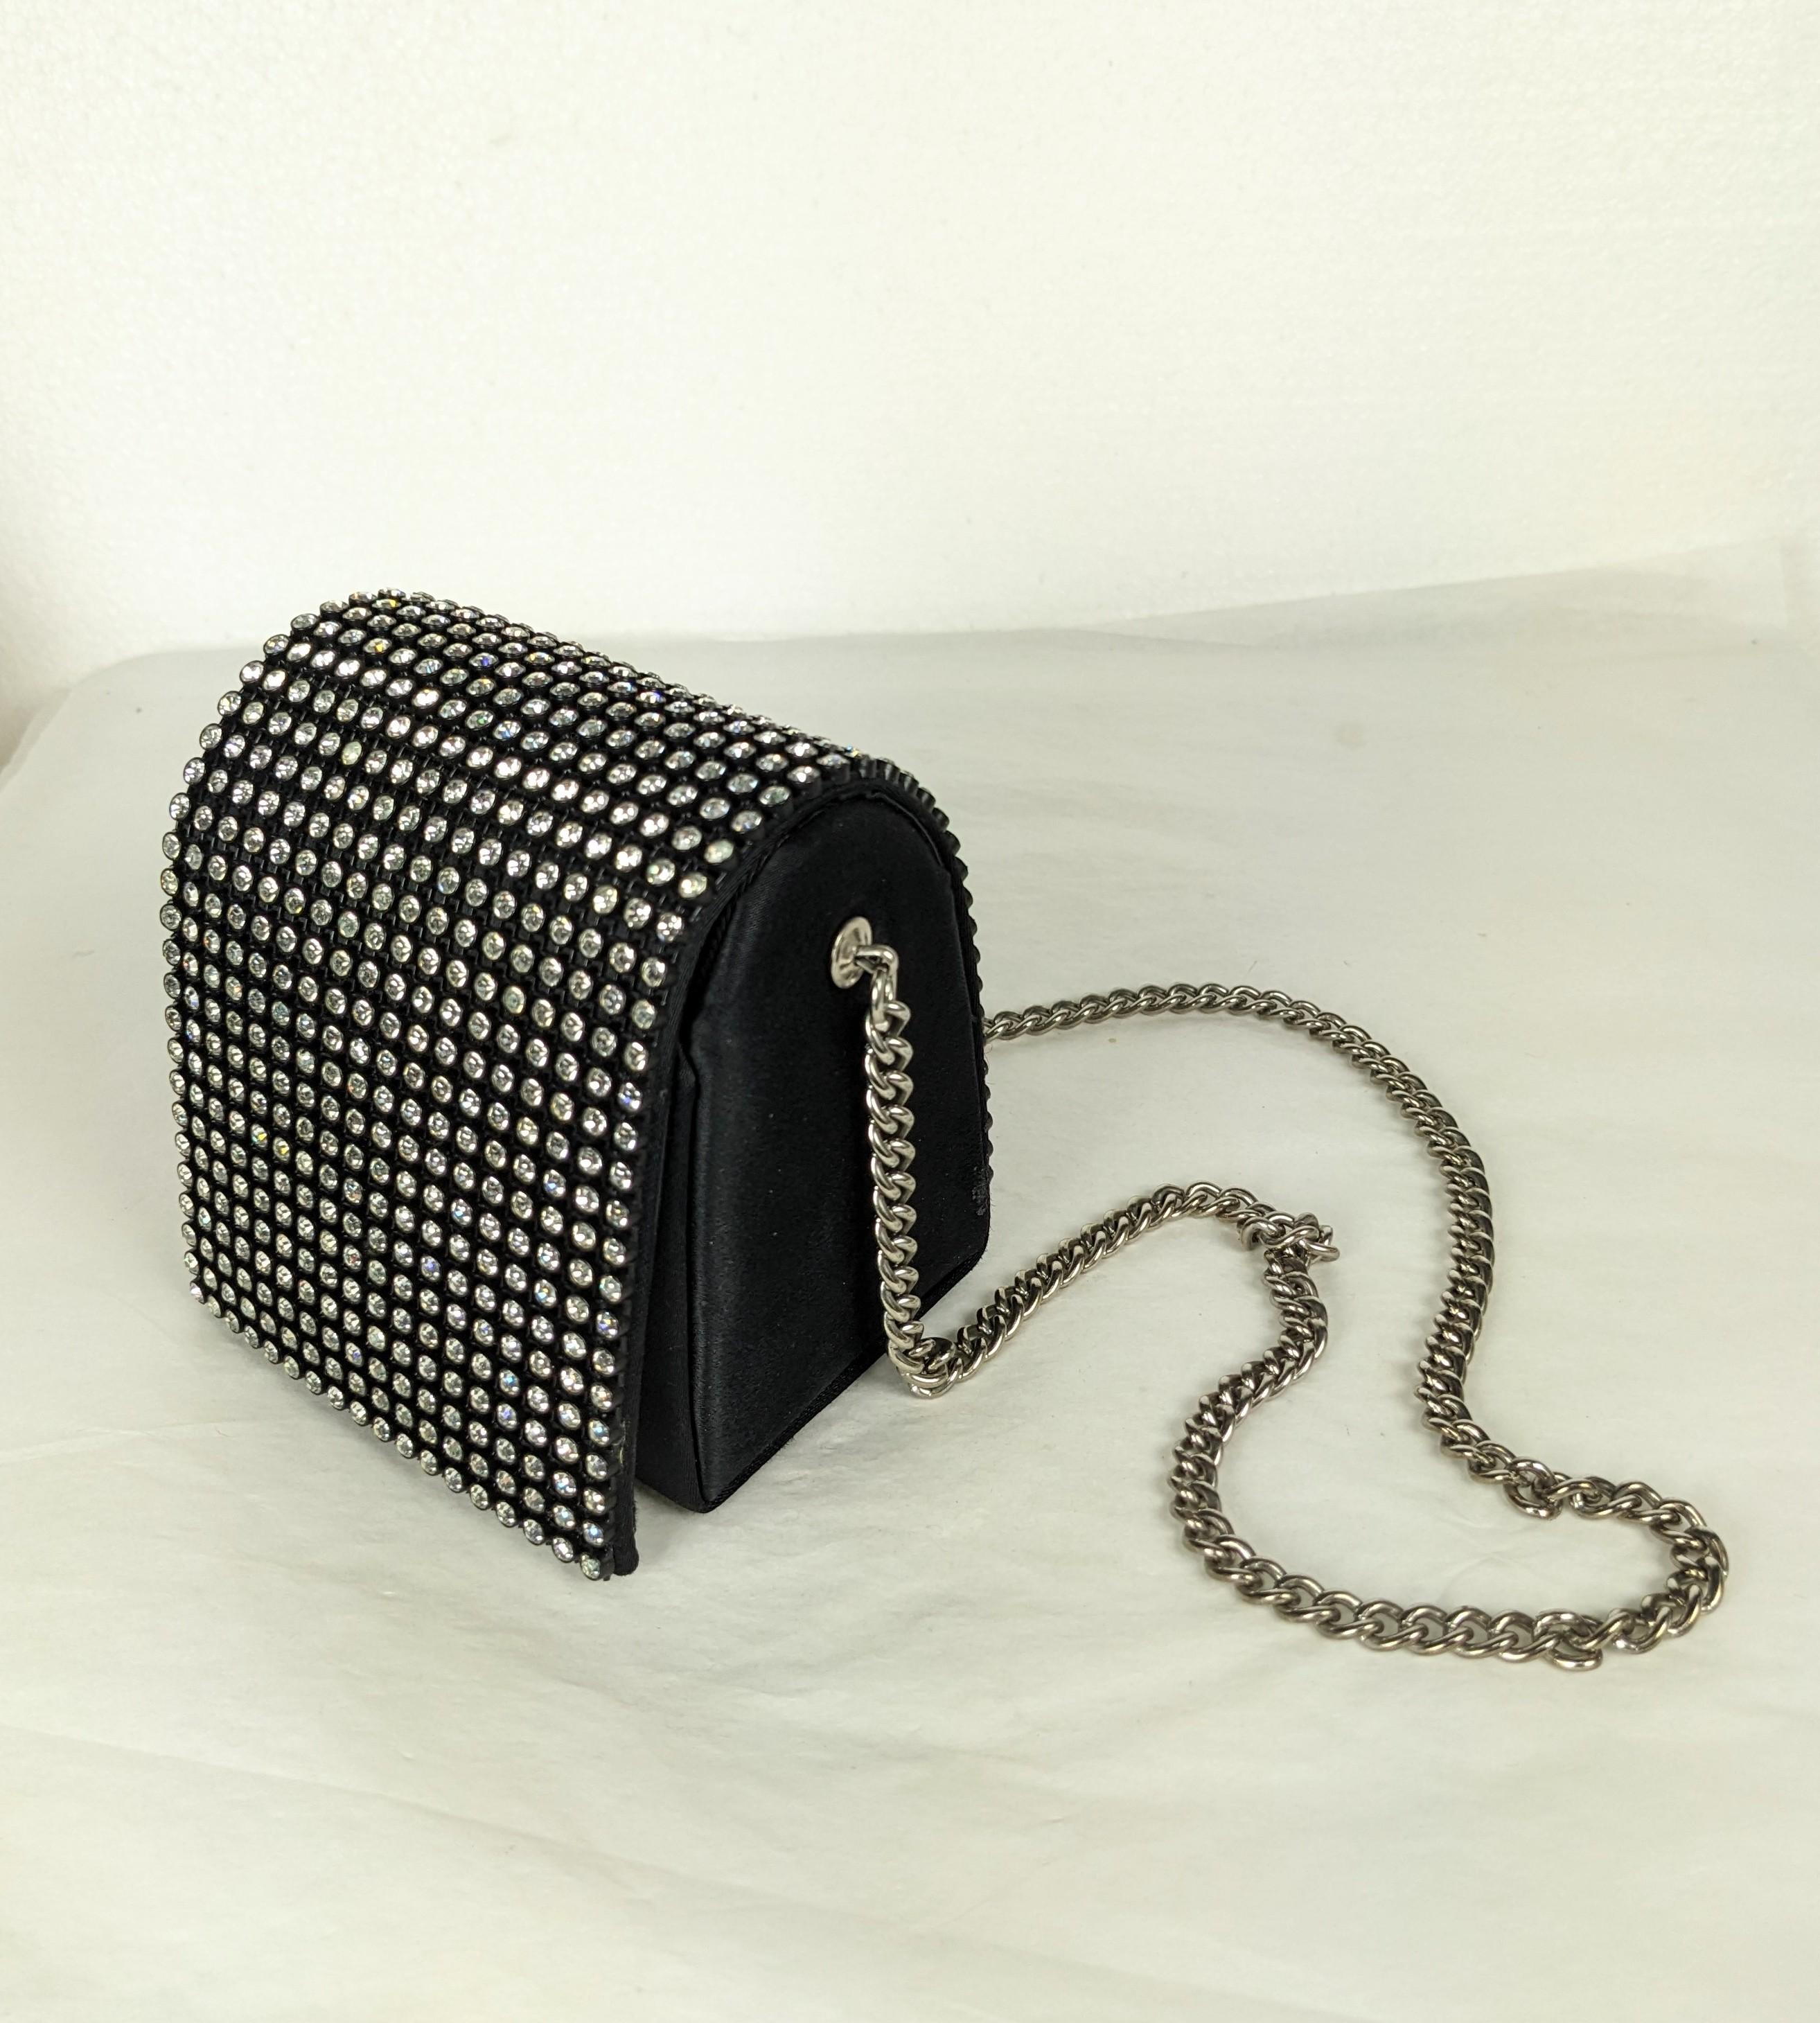 Charmante Arnold Scassi Pave Mini Cube Novelty Bag aus den 1960er Jahren, die sehr wenig Platz bietet, vielleicht einen Lippenstift, ein Klapphandy und einige Taschentücher. Mit Strass besetzte Klappe, außen Satin, Innenfutter aus Faille.